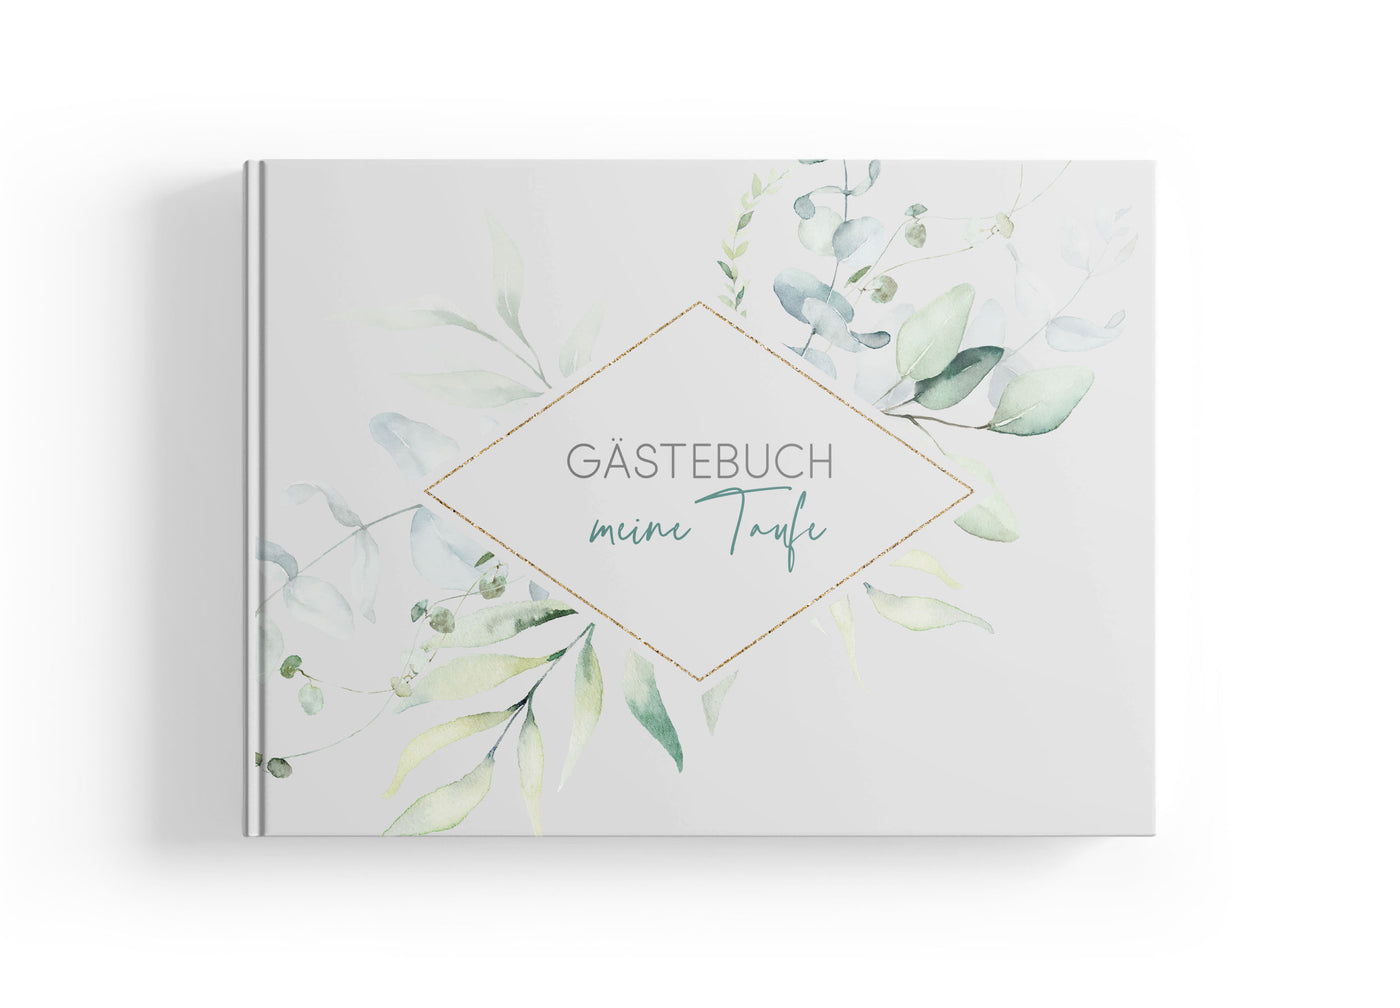 Gästebuch im Greenery Design zum Ausfüllen bei der Taufe